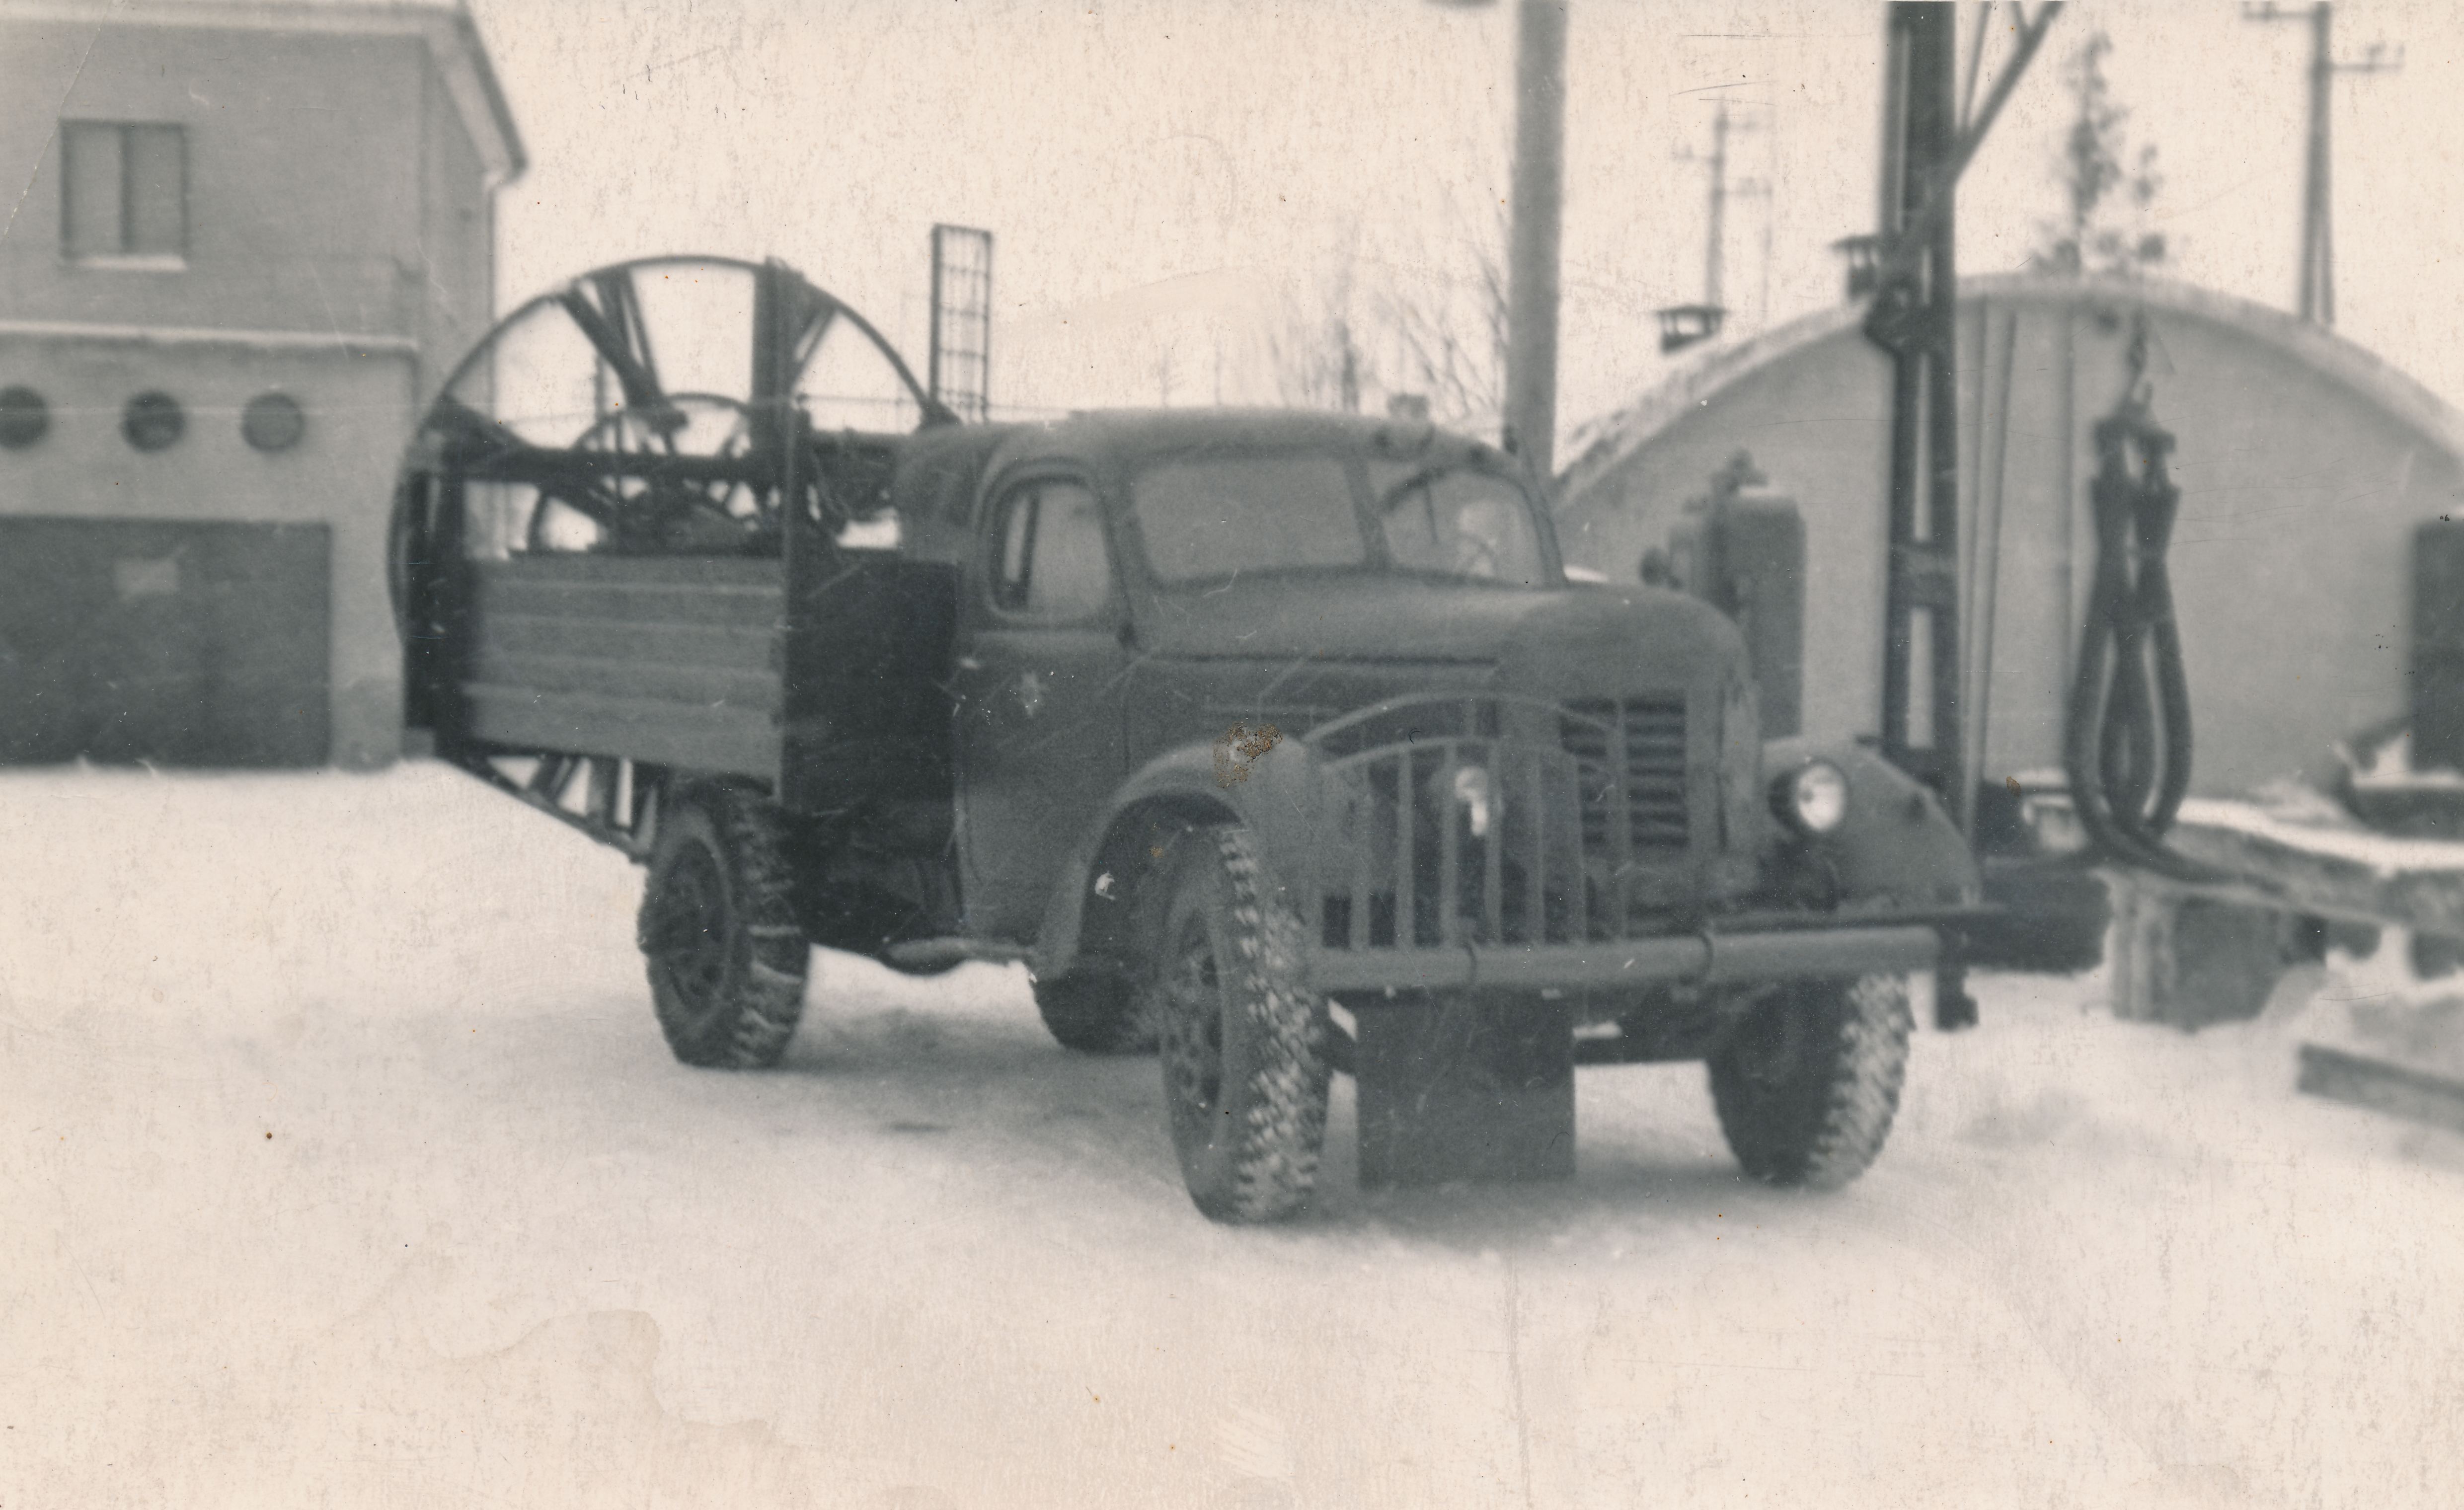 Sahkamisel tee äärde kuhjuvaid lumevalle oli lume kuhjumise vältimiseks vaja eemaldada traktorsahaga või siis käsitsi. Insener Arnold Volberg püüdis seda tööd mehhaniseerida, konstrueerides 1958. aastal rootor-lumevalli eemaldajaga veoautol ZIS-150. (Foto: Eesti Maanteemuuseum)